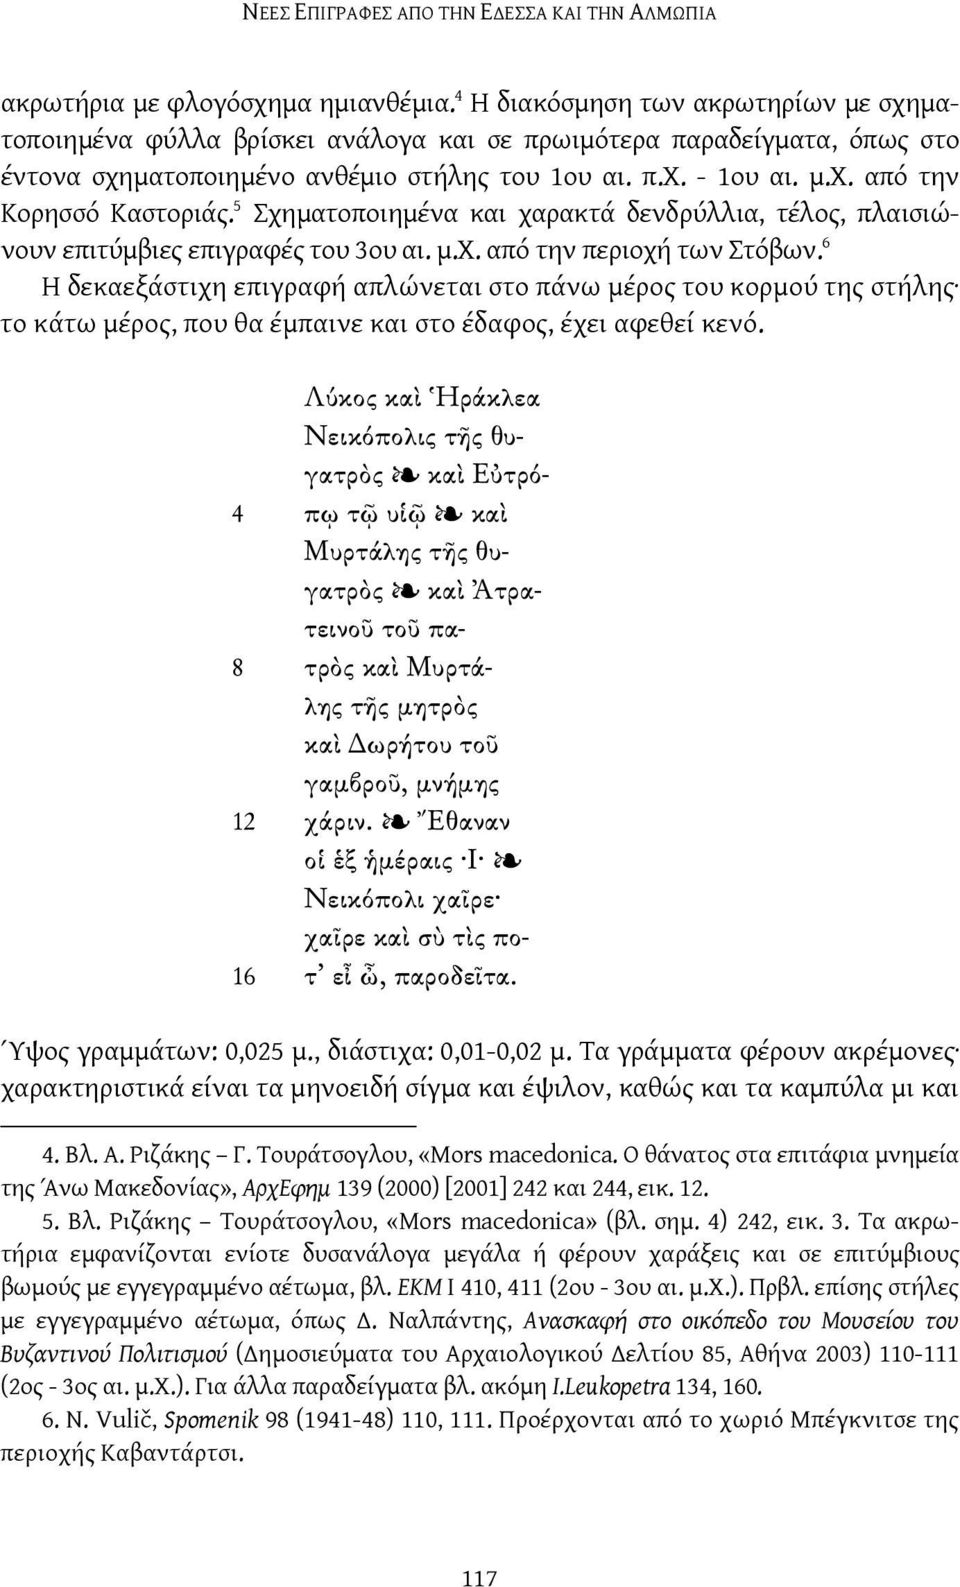 5 Σχηματοποιημένα και χαρακτά δενδρύλλια, τέλος, πλαισιώνουν επιτύμβιες επιγραφές του 3ου αι. μ.χ. από την περιοχή των Στόβων.